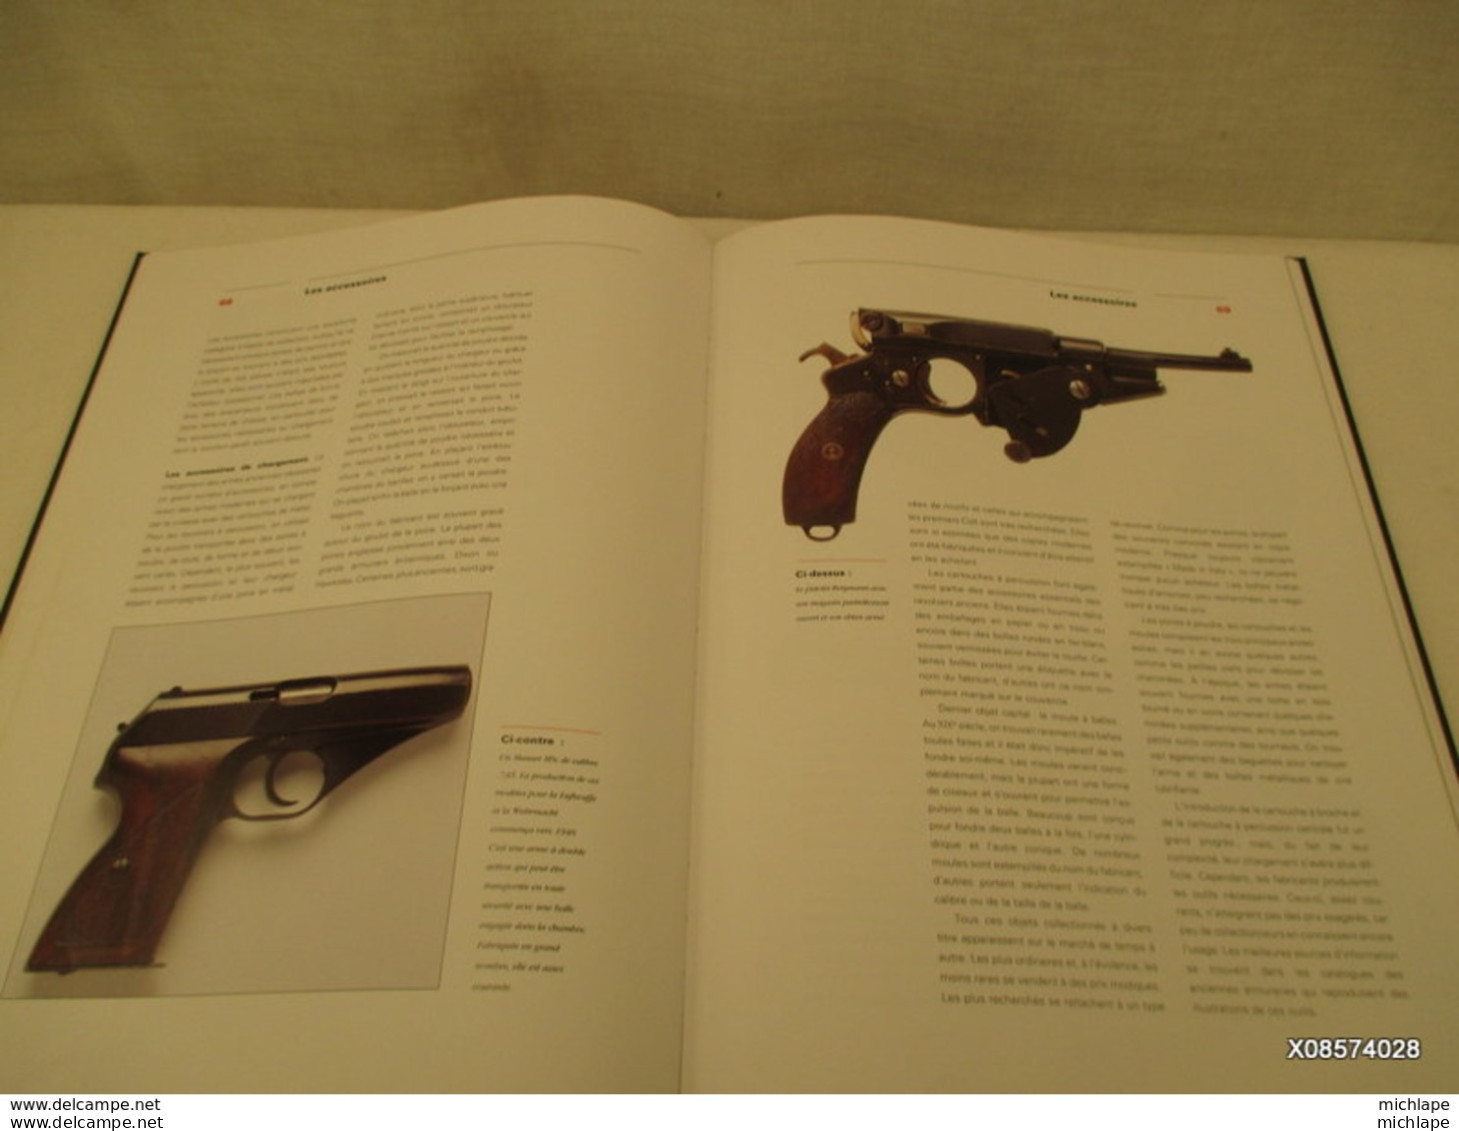 LIVRE  - les armes de poing  -  edition 1994 - format 33 cm X 24 cm - 112 pages  tres bon etat